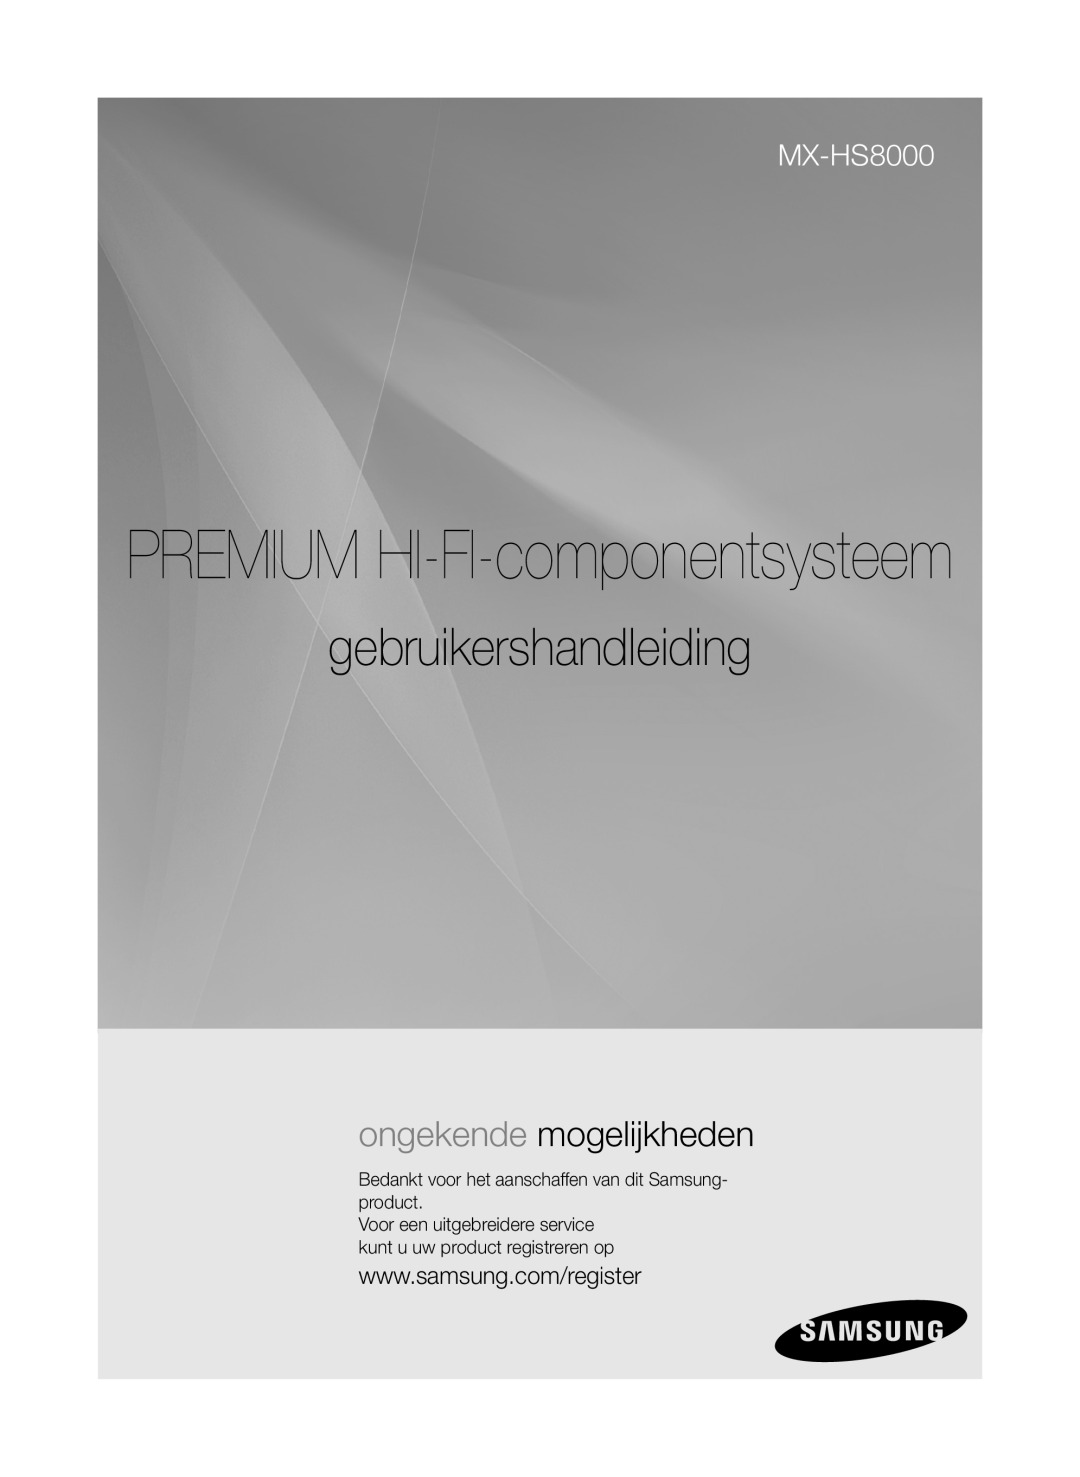 Samsung MX-HS8000/ZF, MX-HS8000/EN manual PREMIUM HI-FI-componentsysteem, gebruikershandleiding, ongekende mogelijkheden 